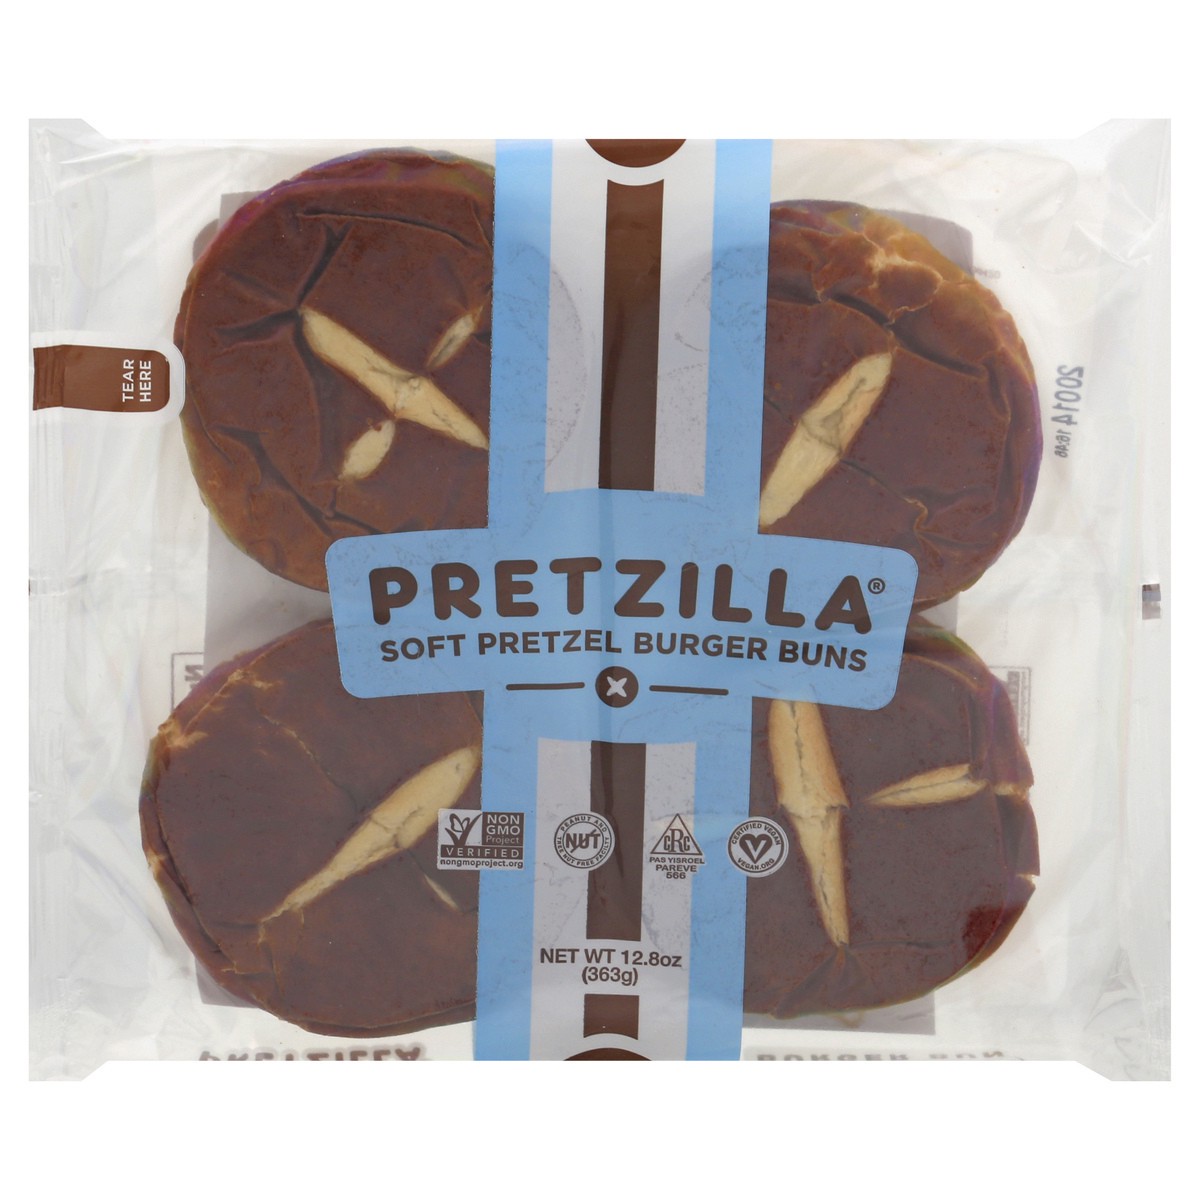 slide 1 of 13, Pretzilla Soft Pretzel Burger Buns 12.8 oz, 12.8 oz